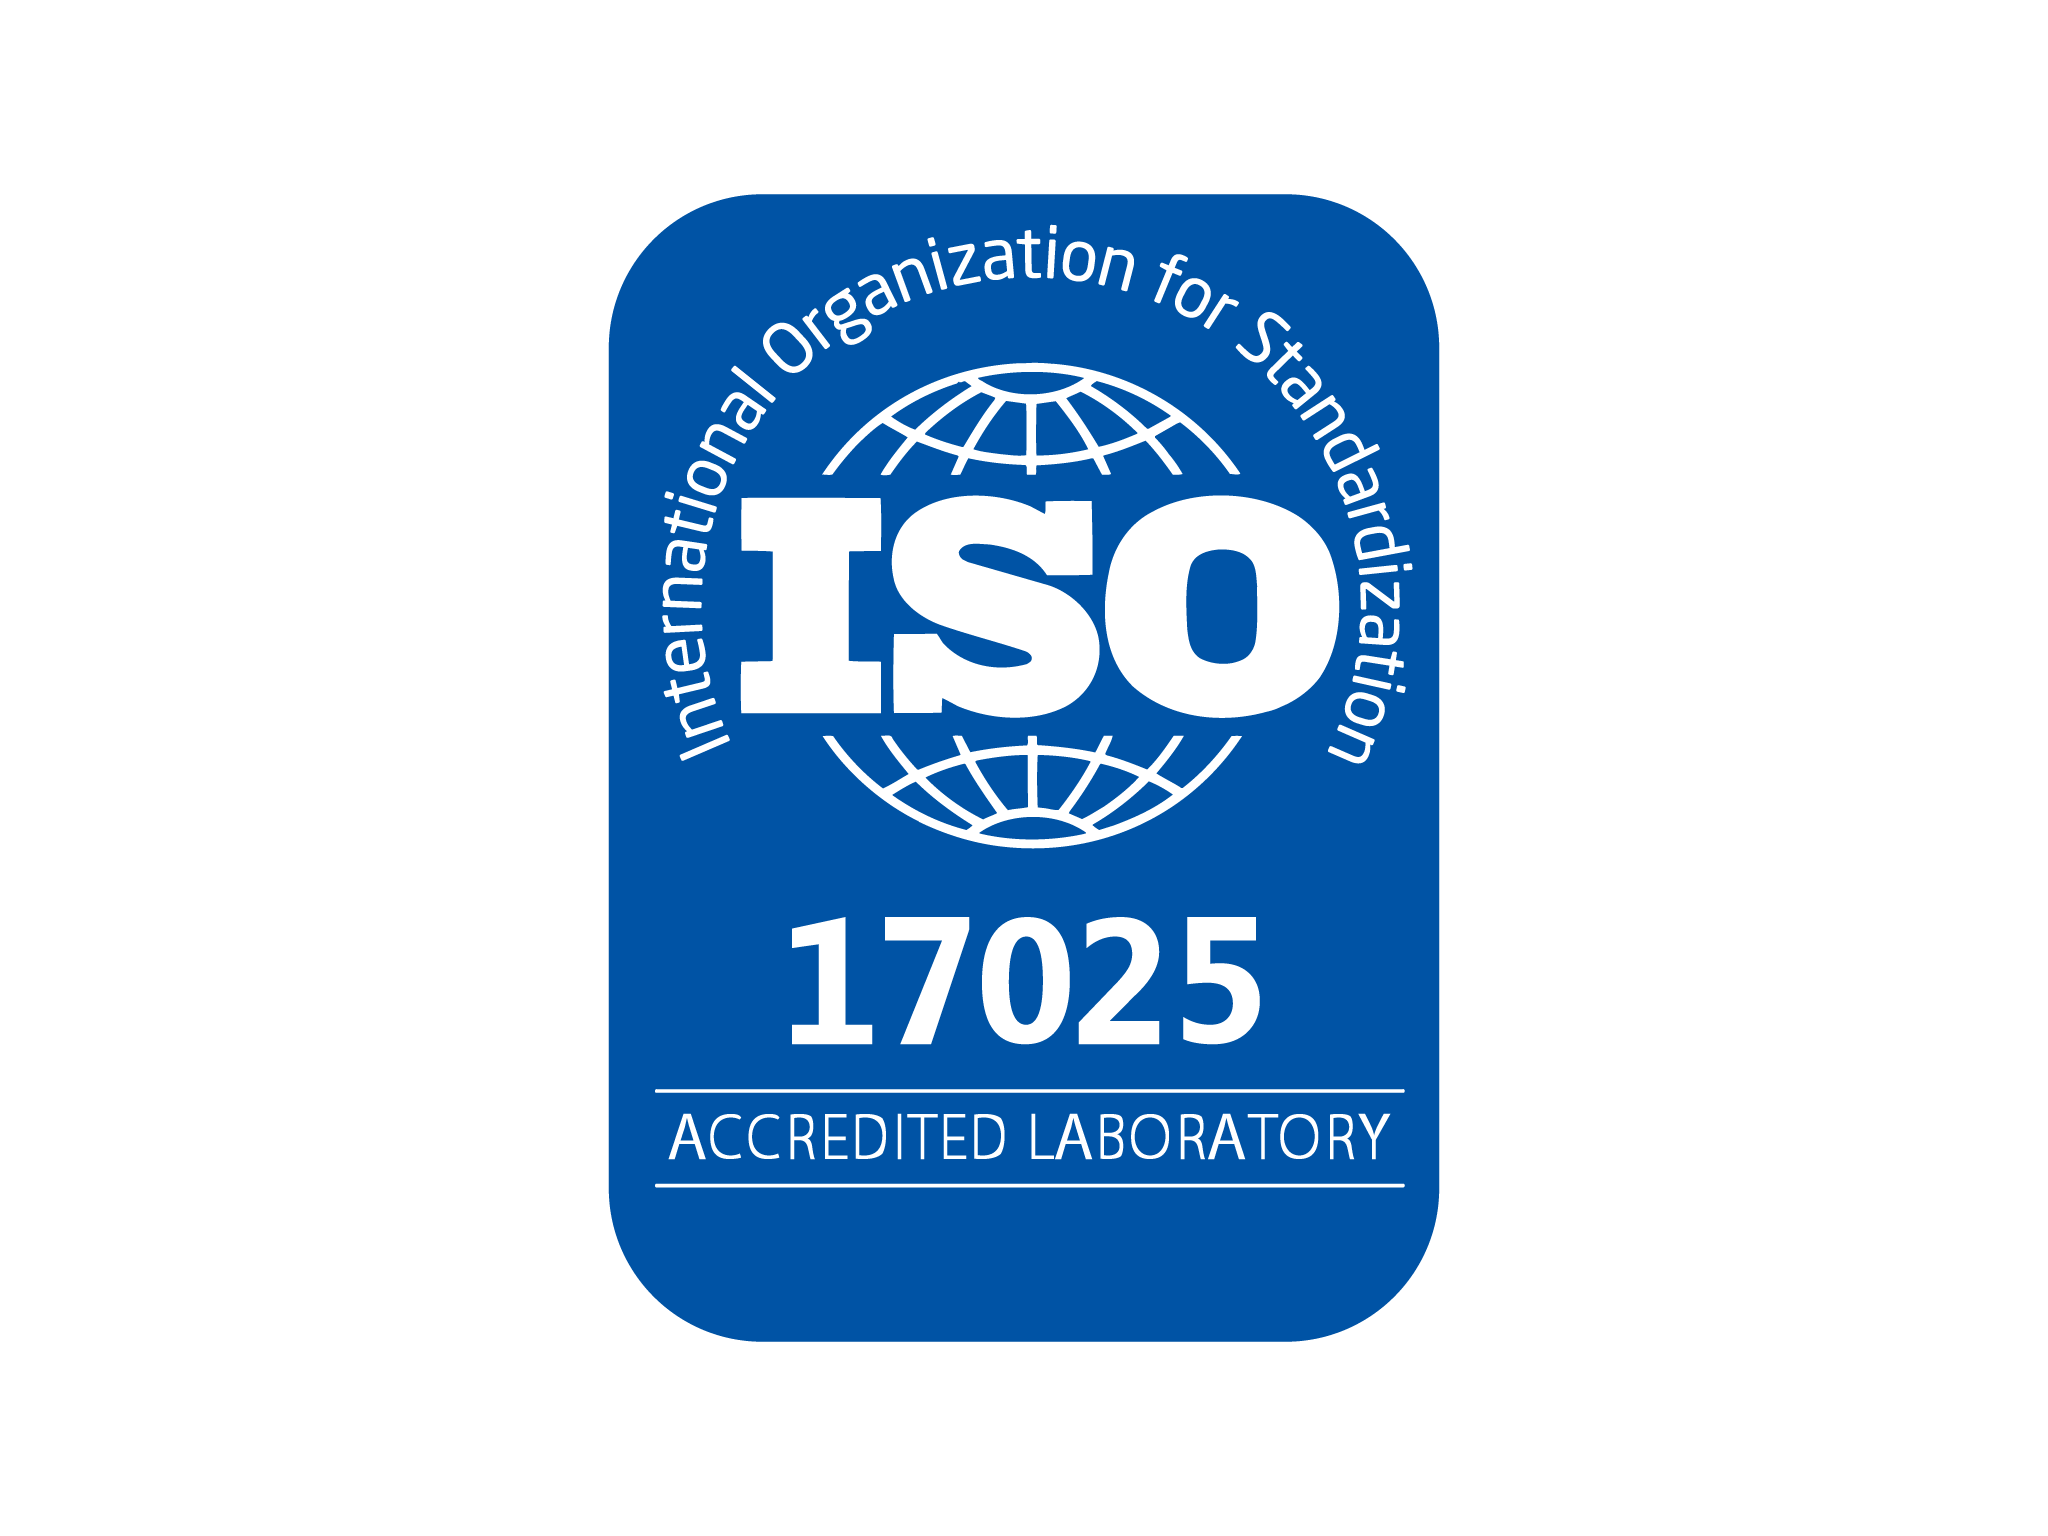 Chứng nhận ISO 17025:2017